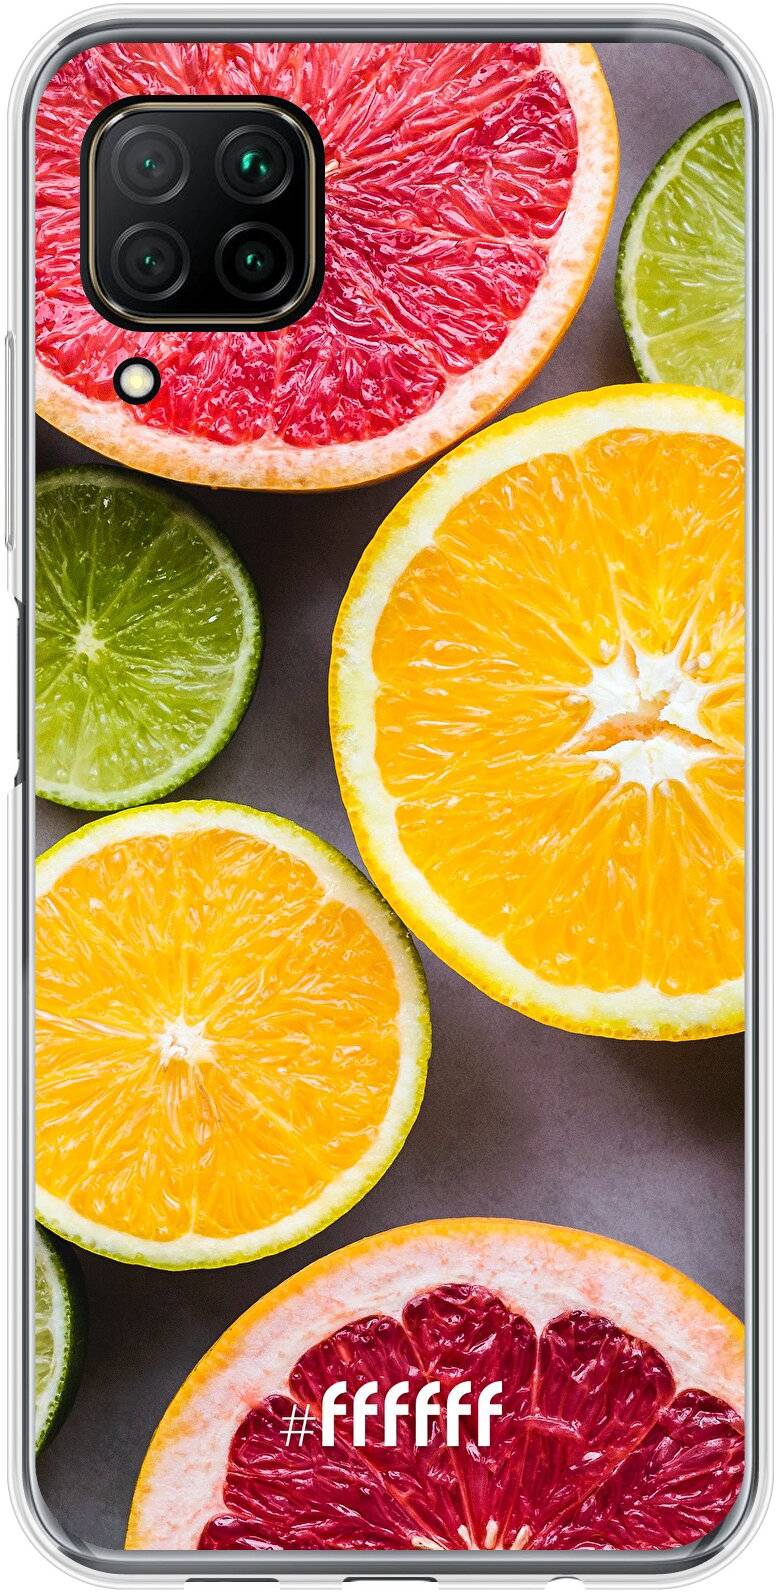 Citrus Fruit P40 Lite